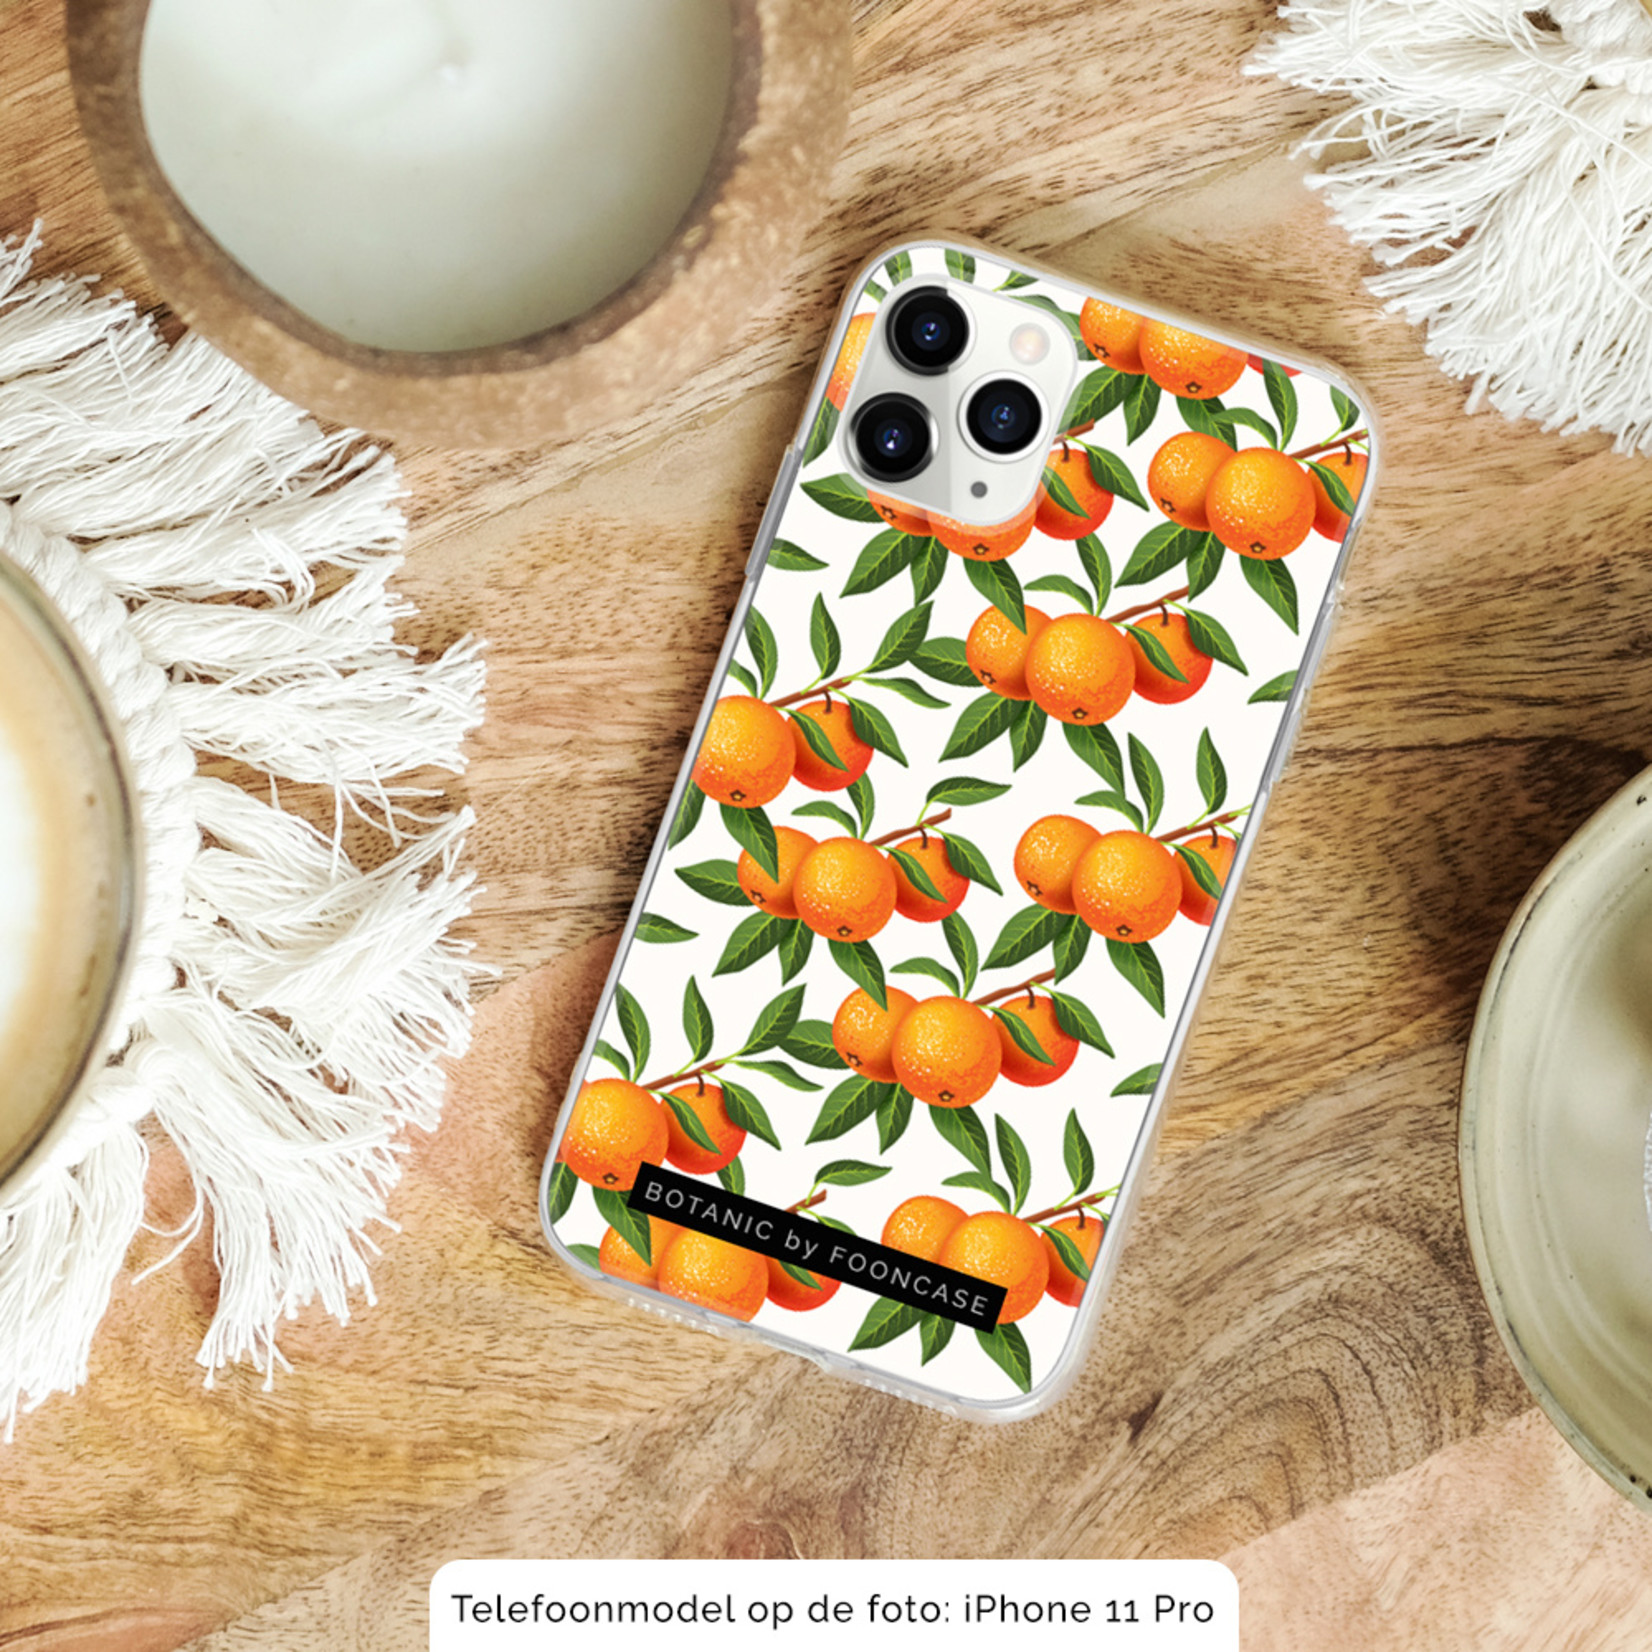 FOONCASE Iphone X Cover - Botanic Manderin